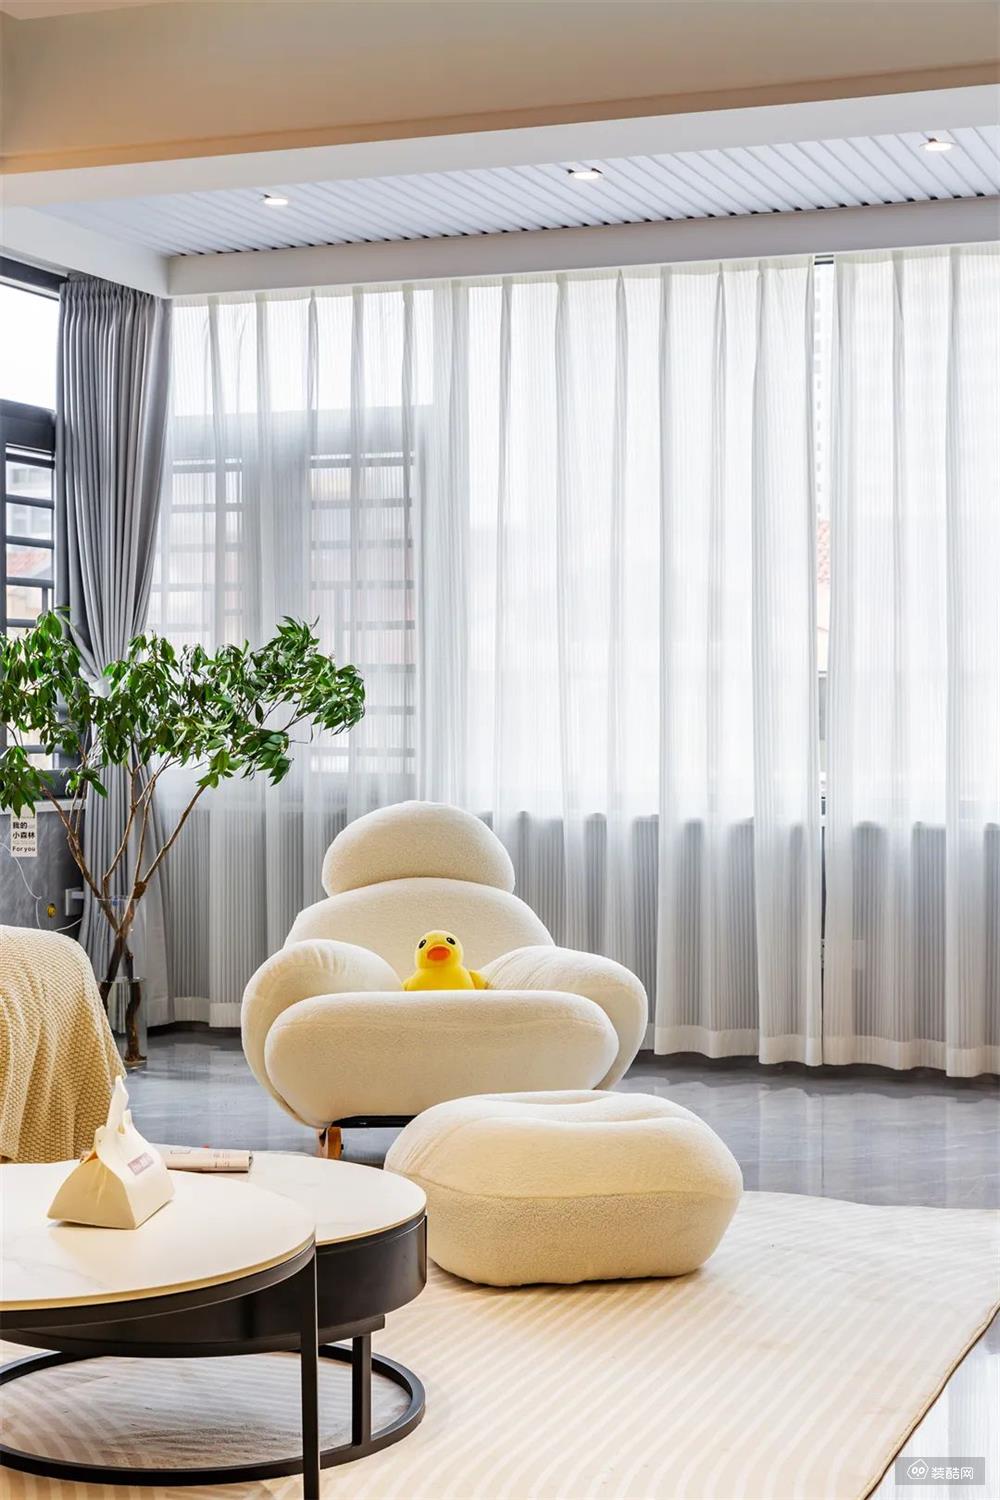 沙发背景墙，以简约高雅的线条设计，配合圆弧造型的暖色壁灯，圆润曲线的摇椅组合平衡精致与舒适，为生活的每一帧都添上柔和滤镜。